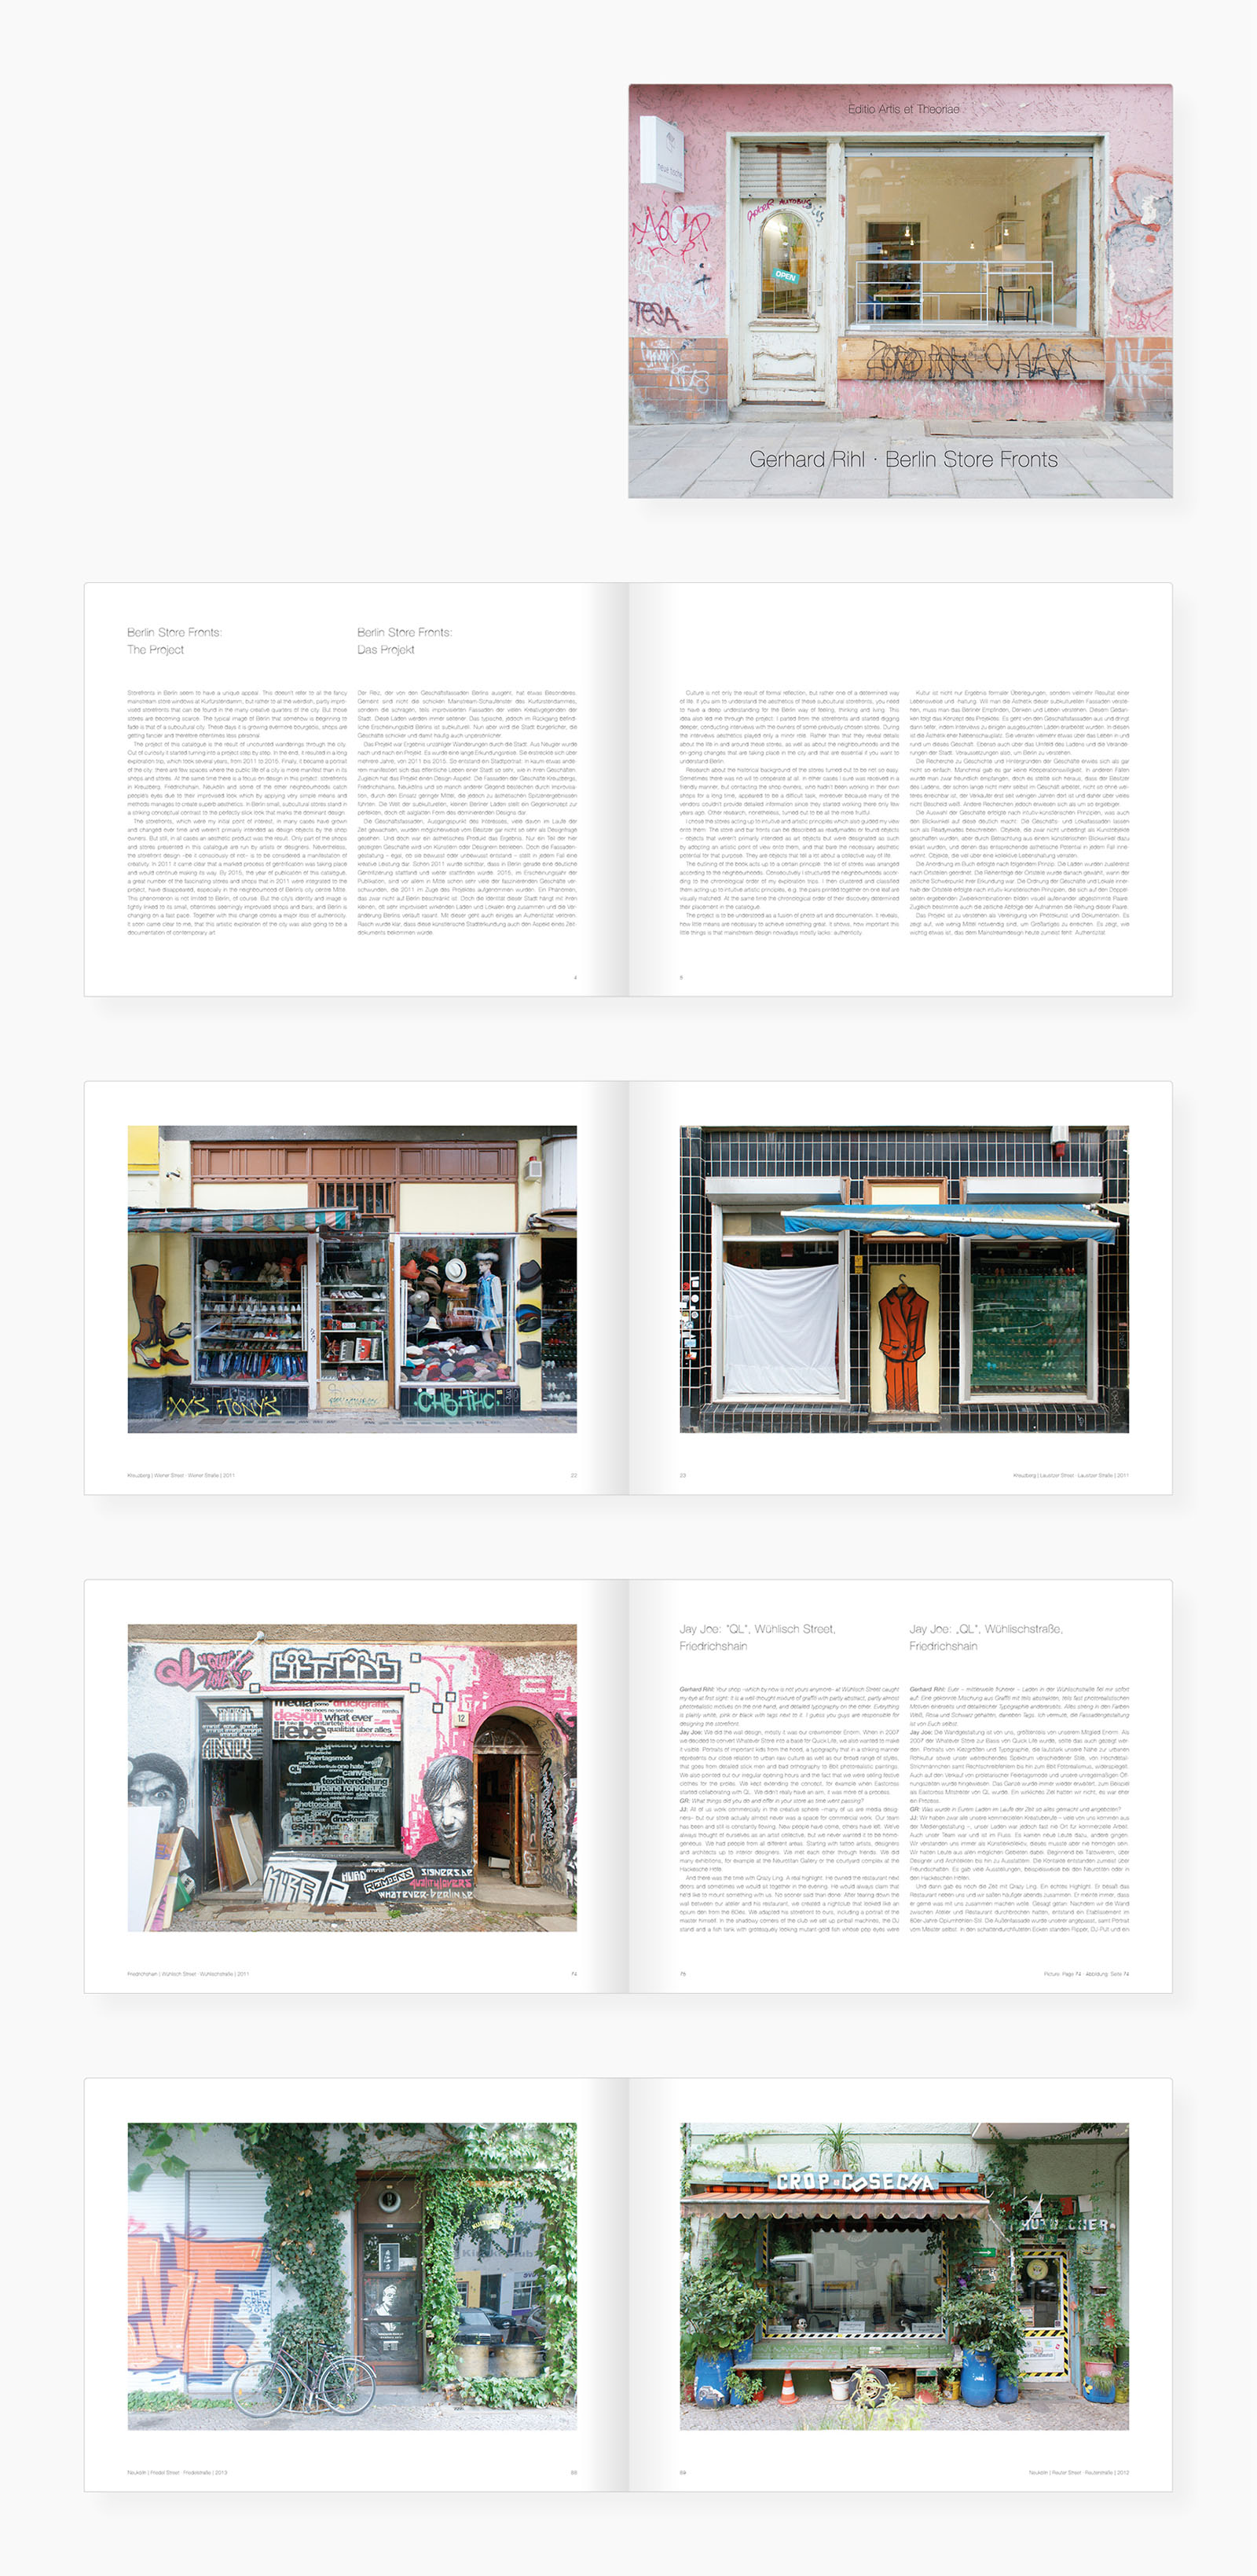 Coverseite und Auswahl von Innenseiten des Buches "Berlin Store Fronts"